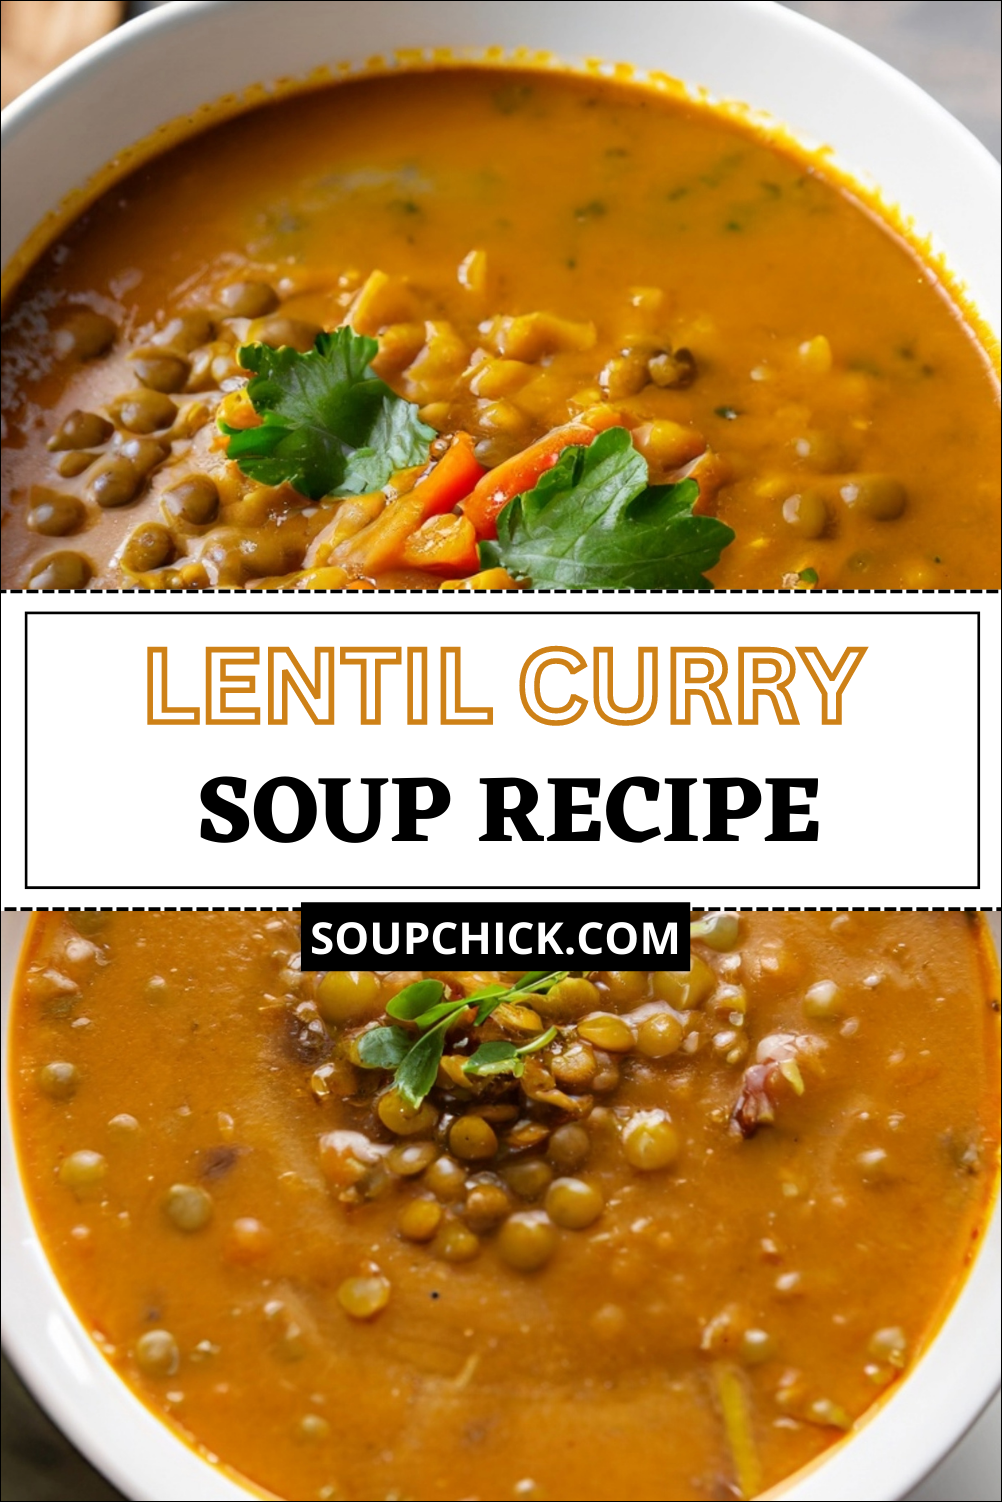 Lentil Curry soup